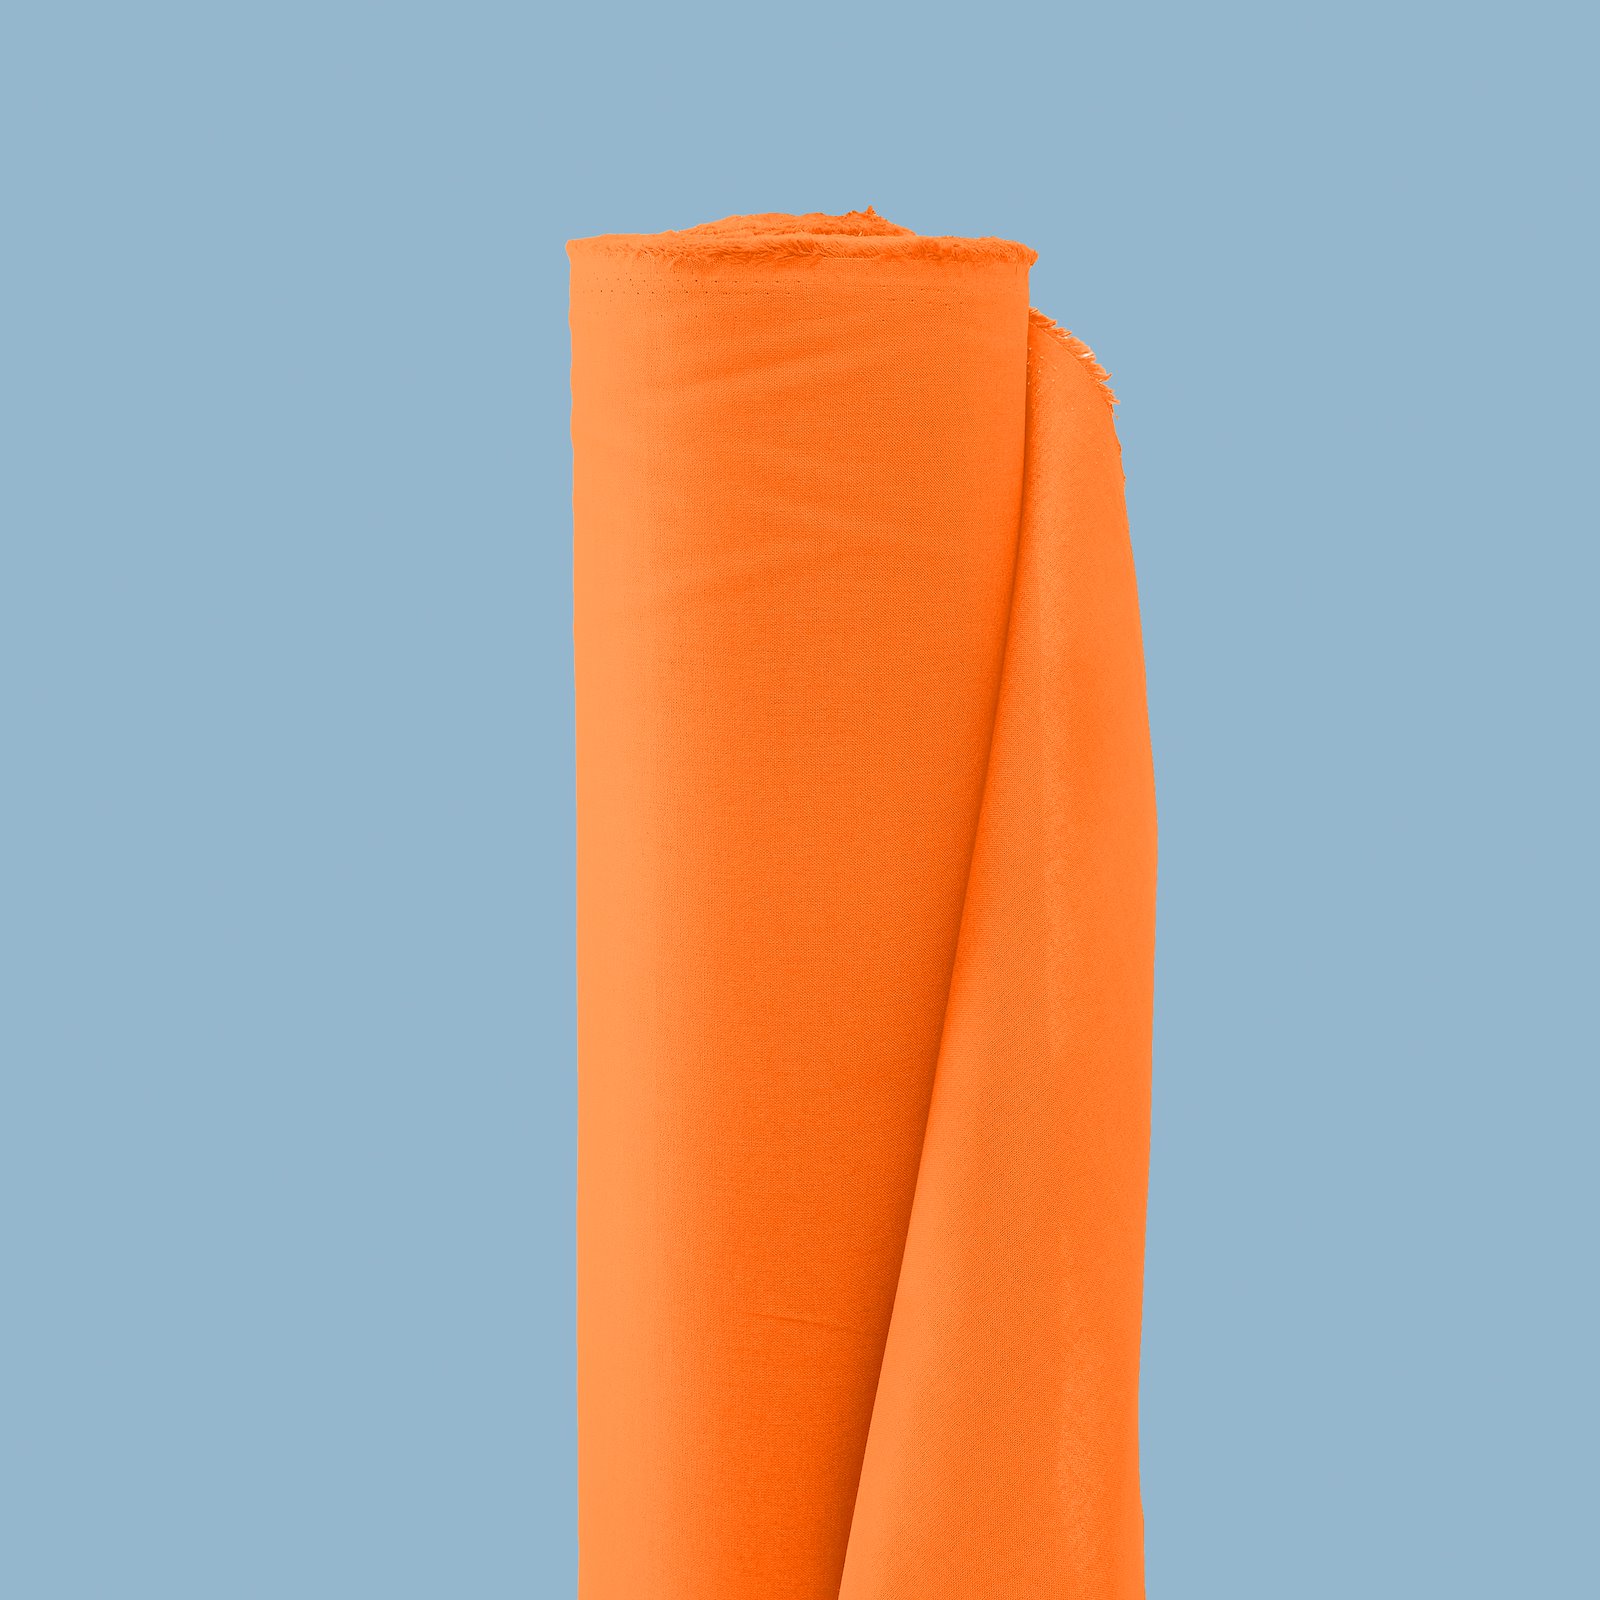 Lyx bomullsväv orange 4246_pack_d